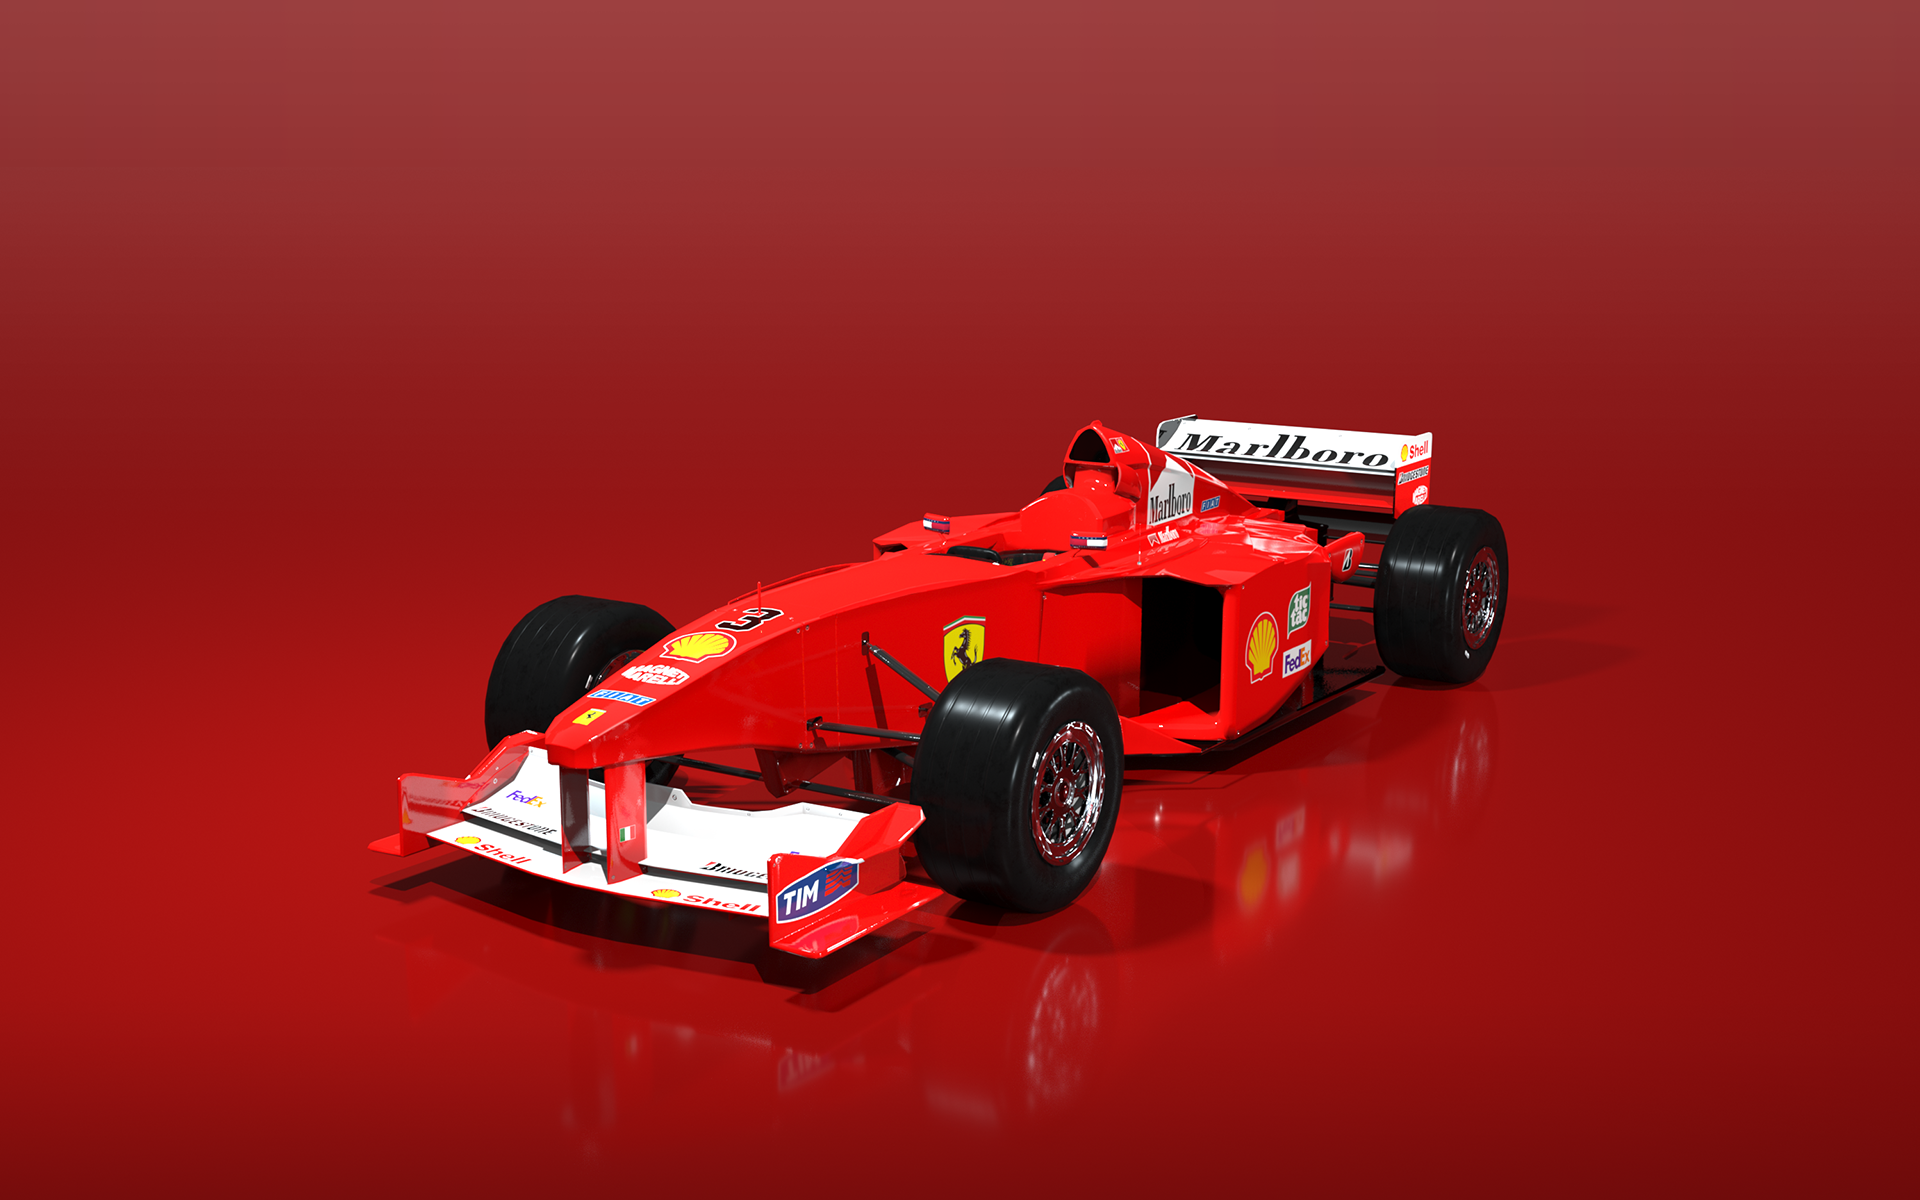 Ferrari SF 2000